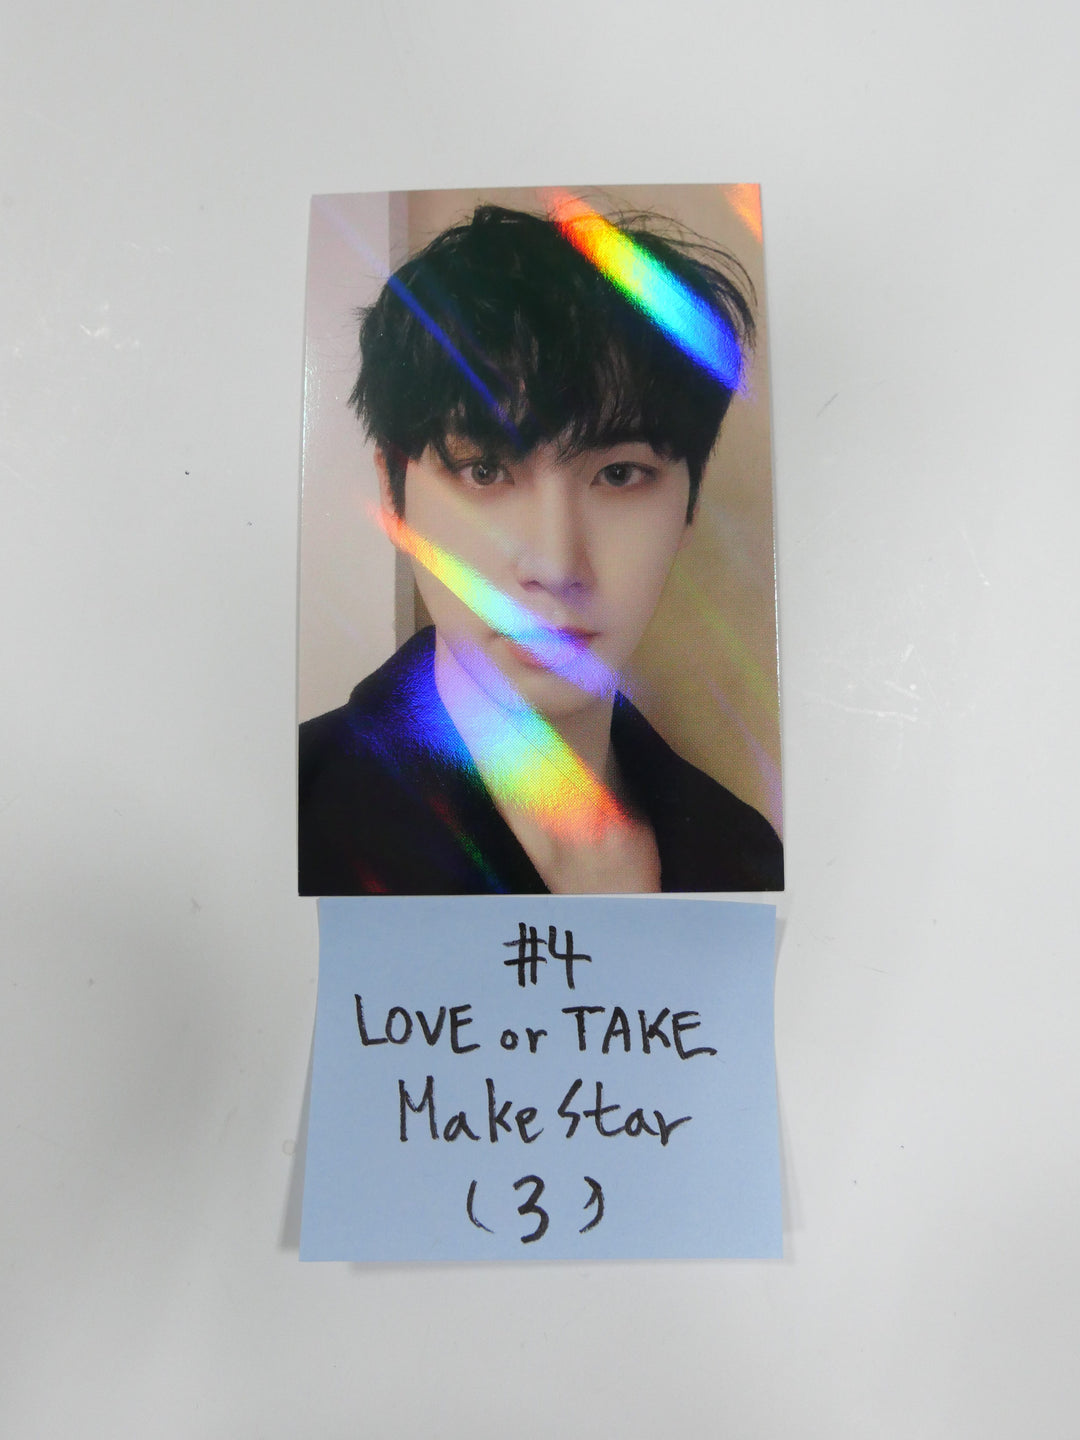 Pentagon "Love Or Take " - Makestar Fansign Event Hologram Photocard